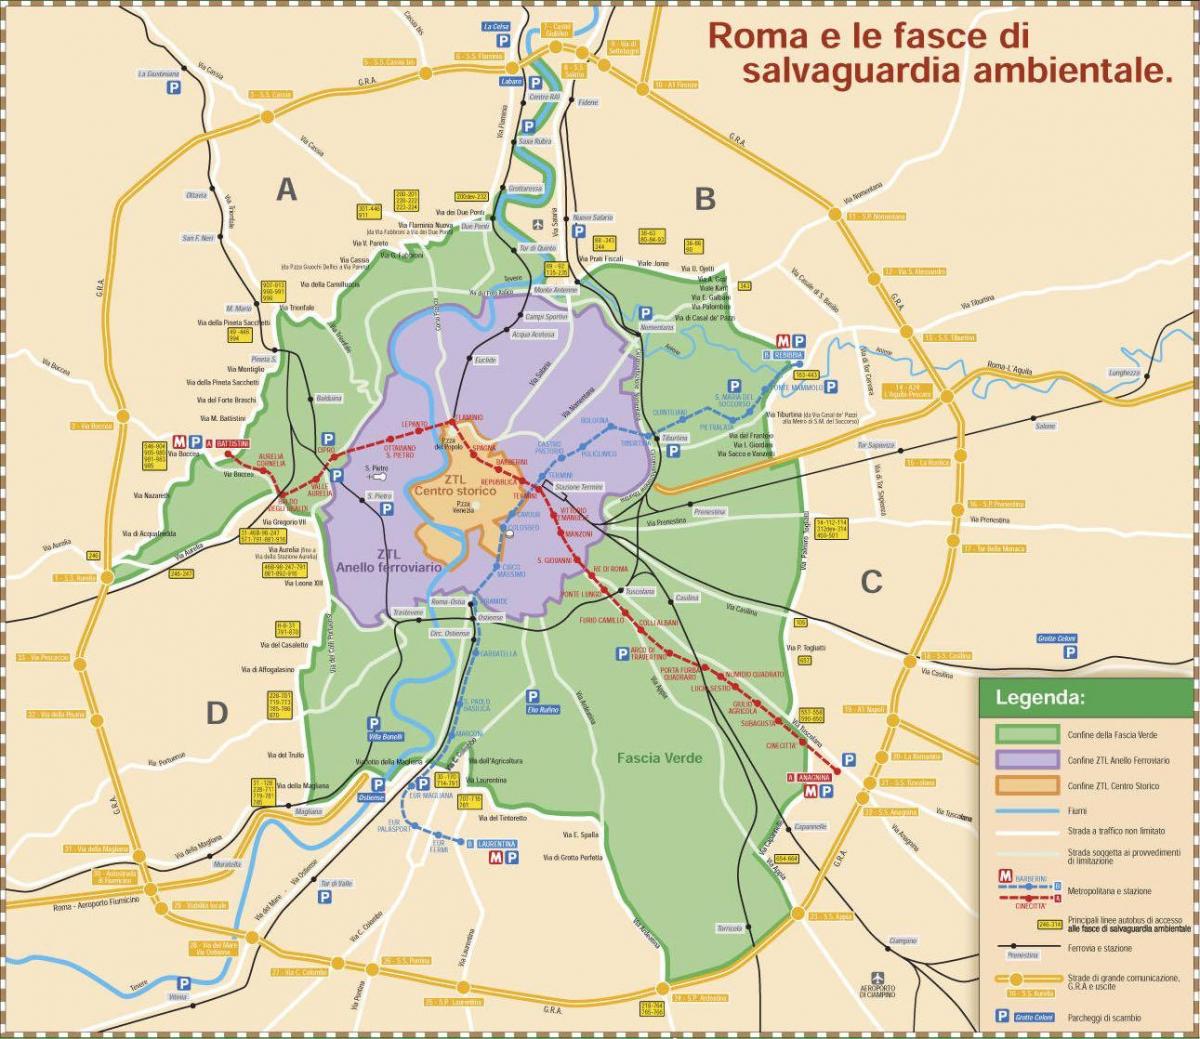 Řím ztl zóny mapě